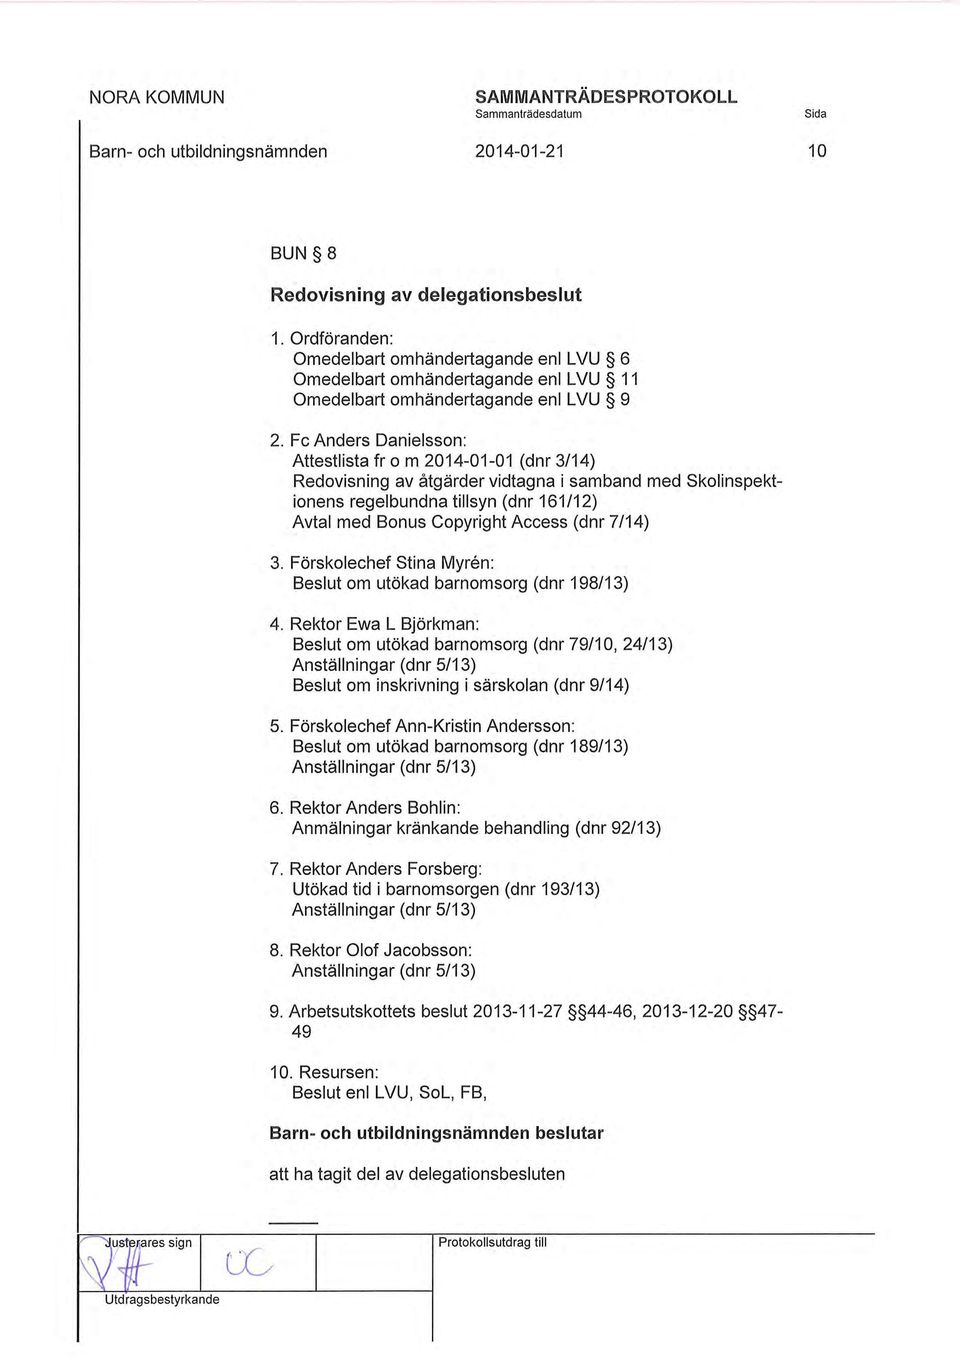 Fe Anders Danielsson: Attestlista fr o m 2014-01-01 (dnr 3/14) Redovisning av åtgärder vidtagna i samband med skolinspektionens regelbundna tillsyn (dnr 161 /12) Avtal med Bonus Copyright Access (dnr